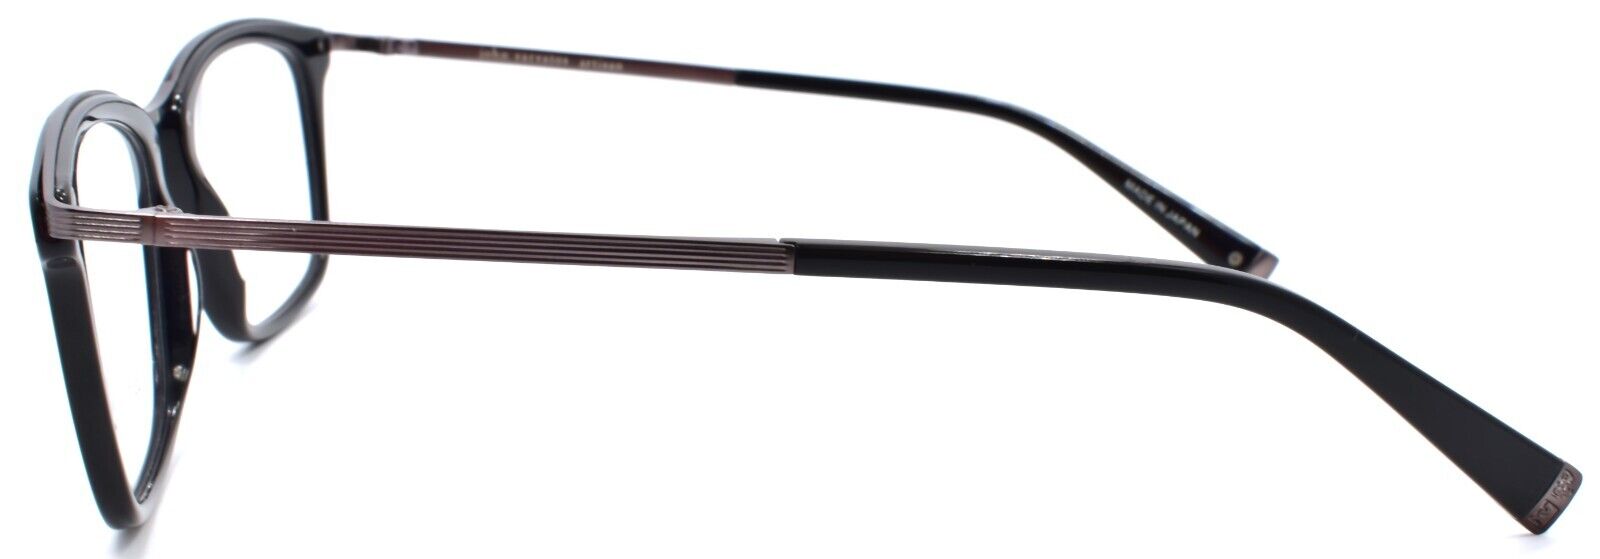 3-John Varvatos V375 Men's Eyeglasses Frames 53-20-145 Black Japan-751286310375-IKSpecs